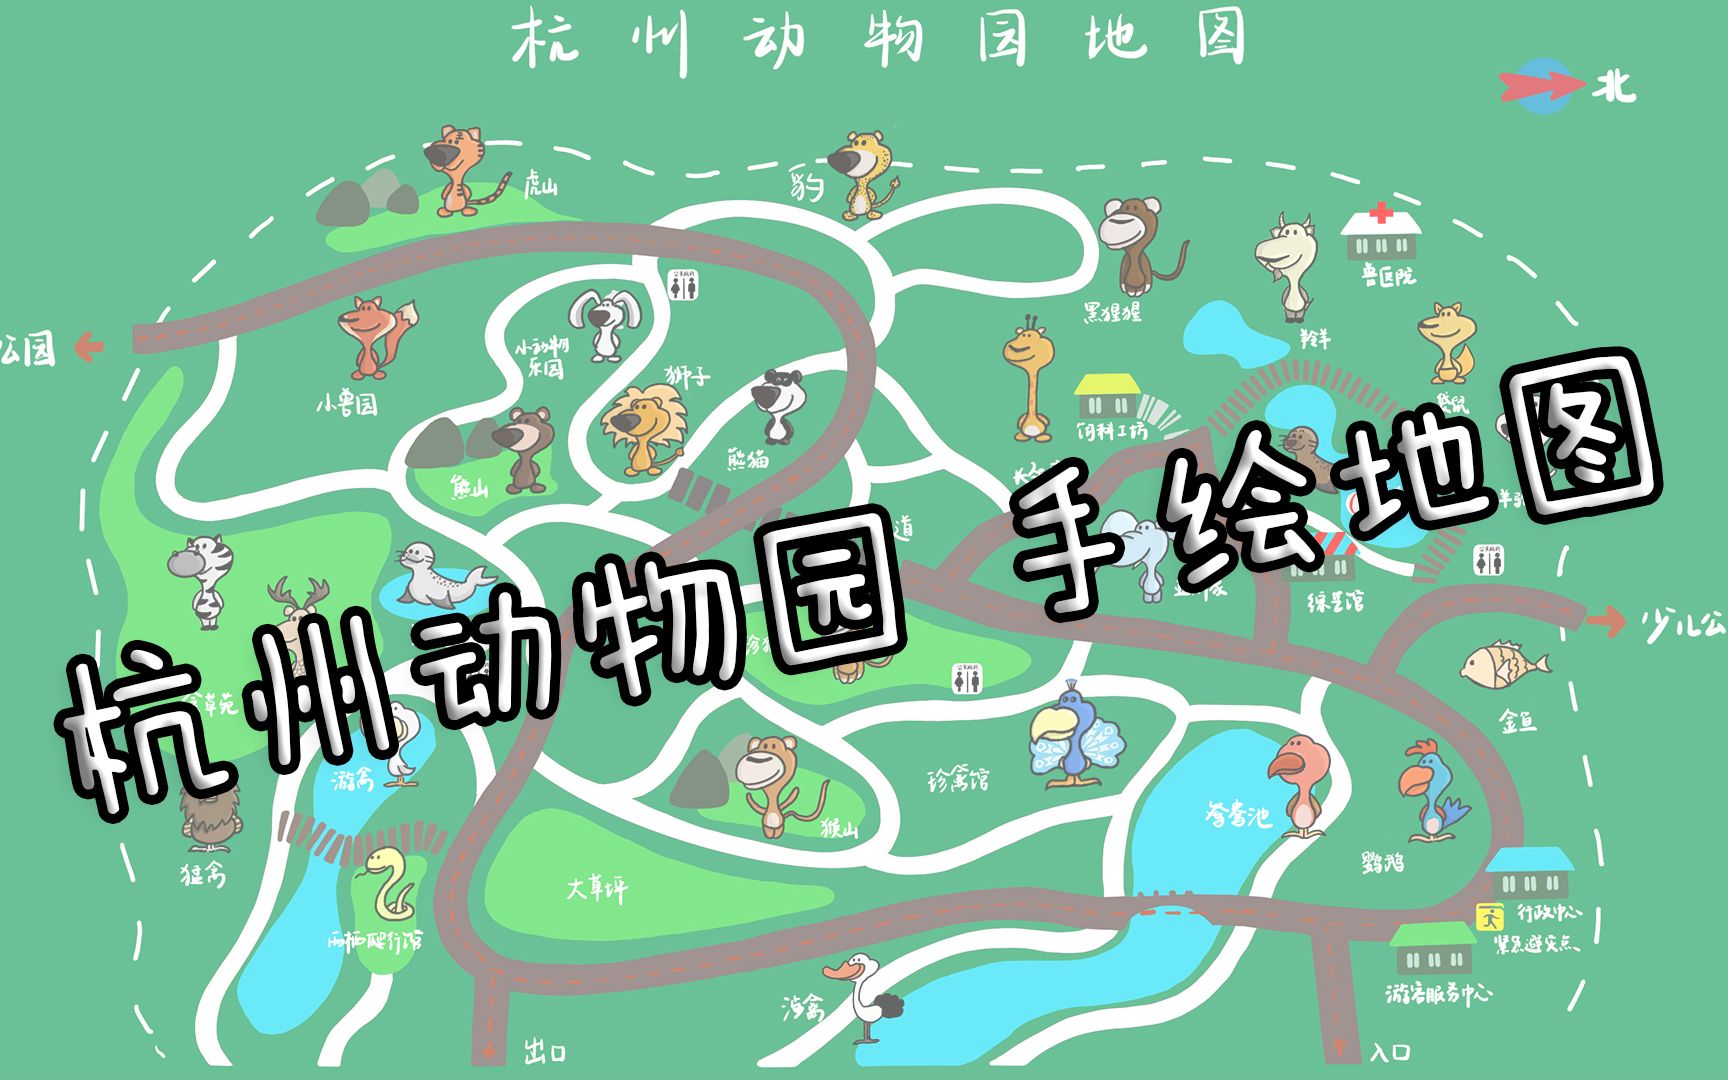 杭州野生动物园导游图图片